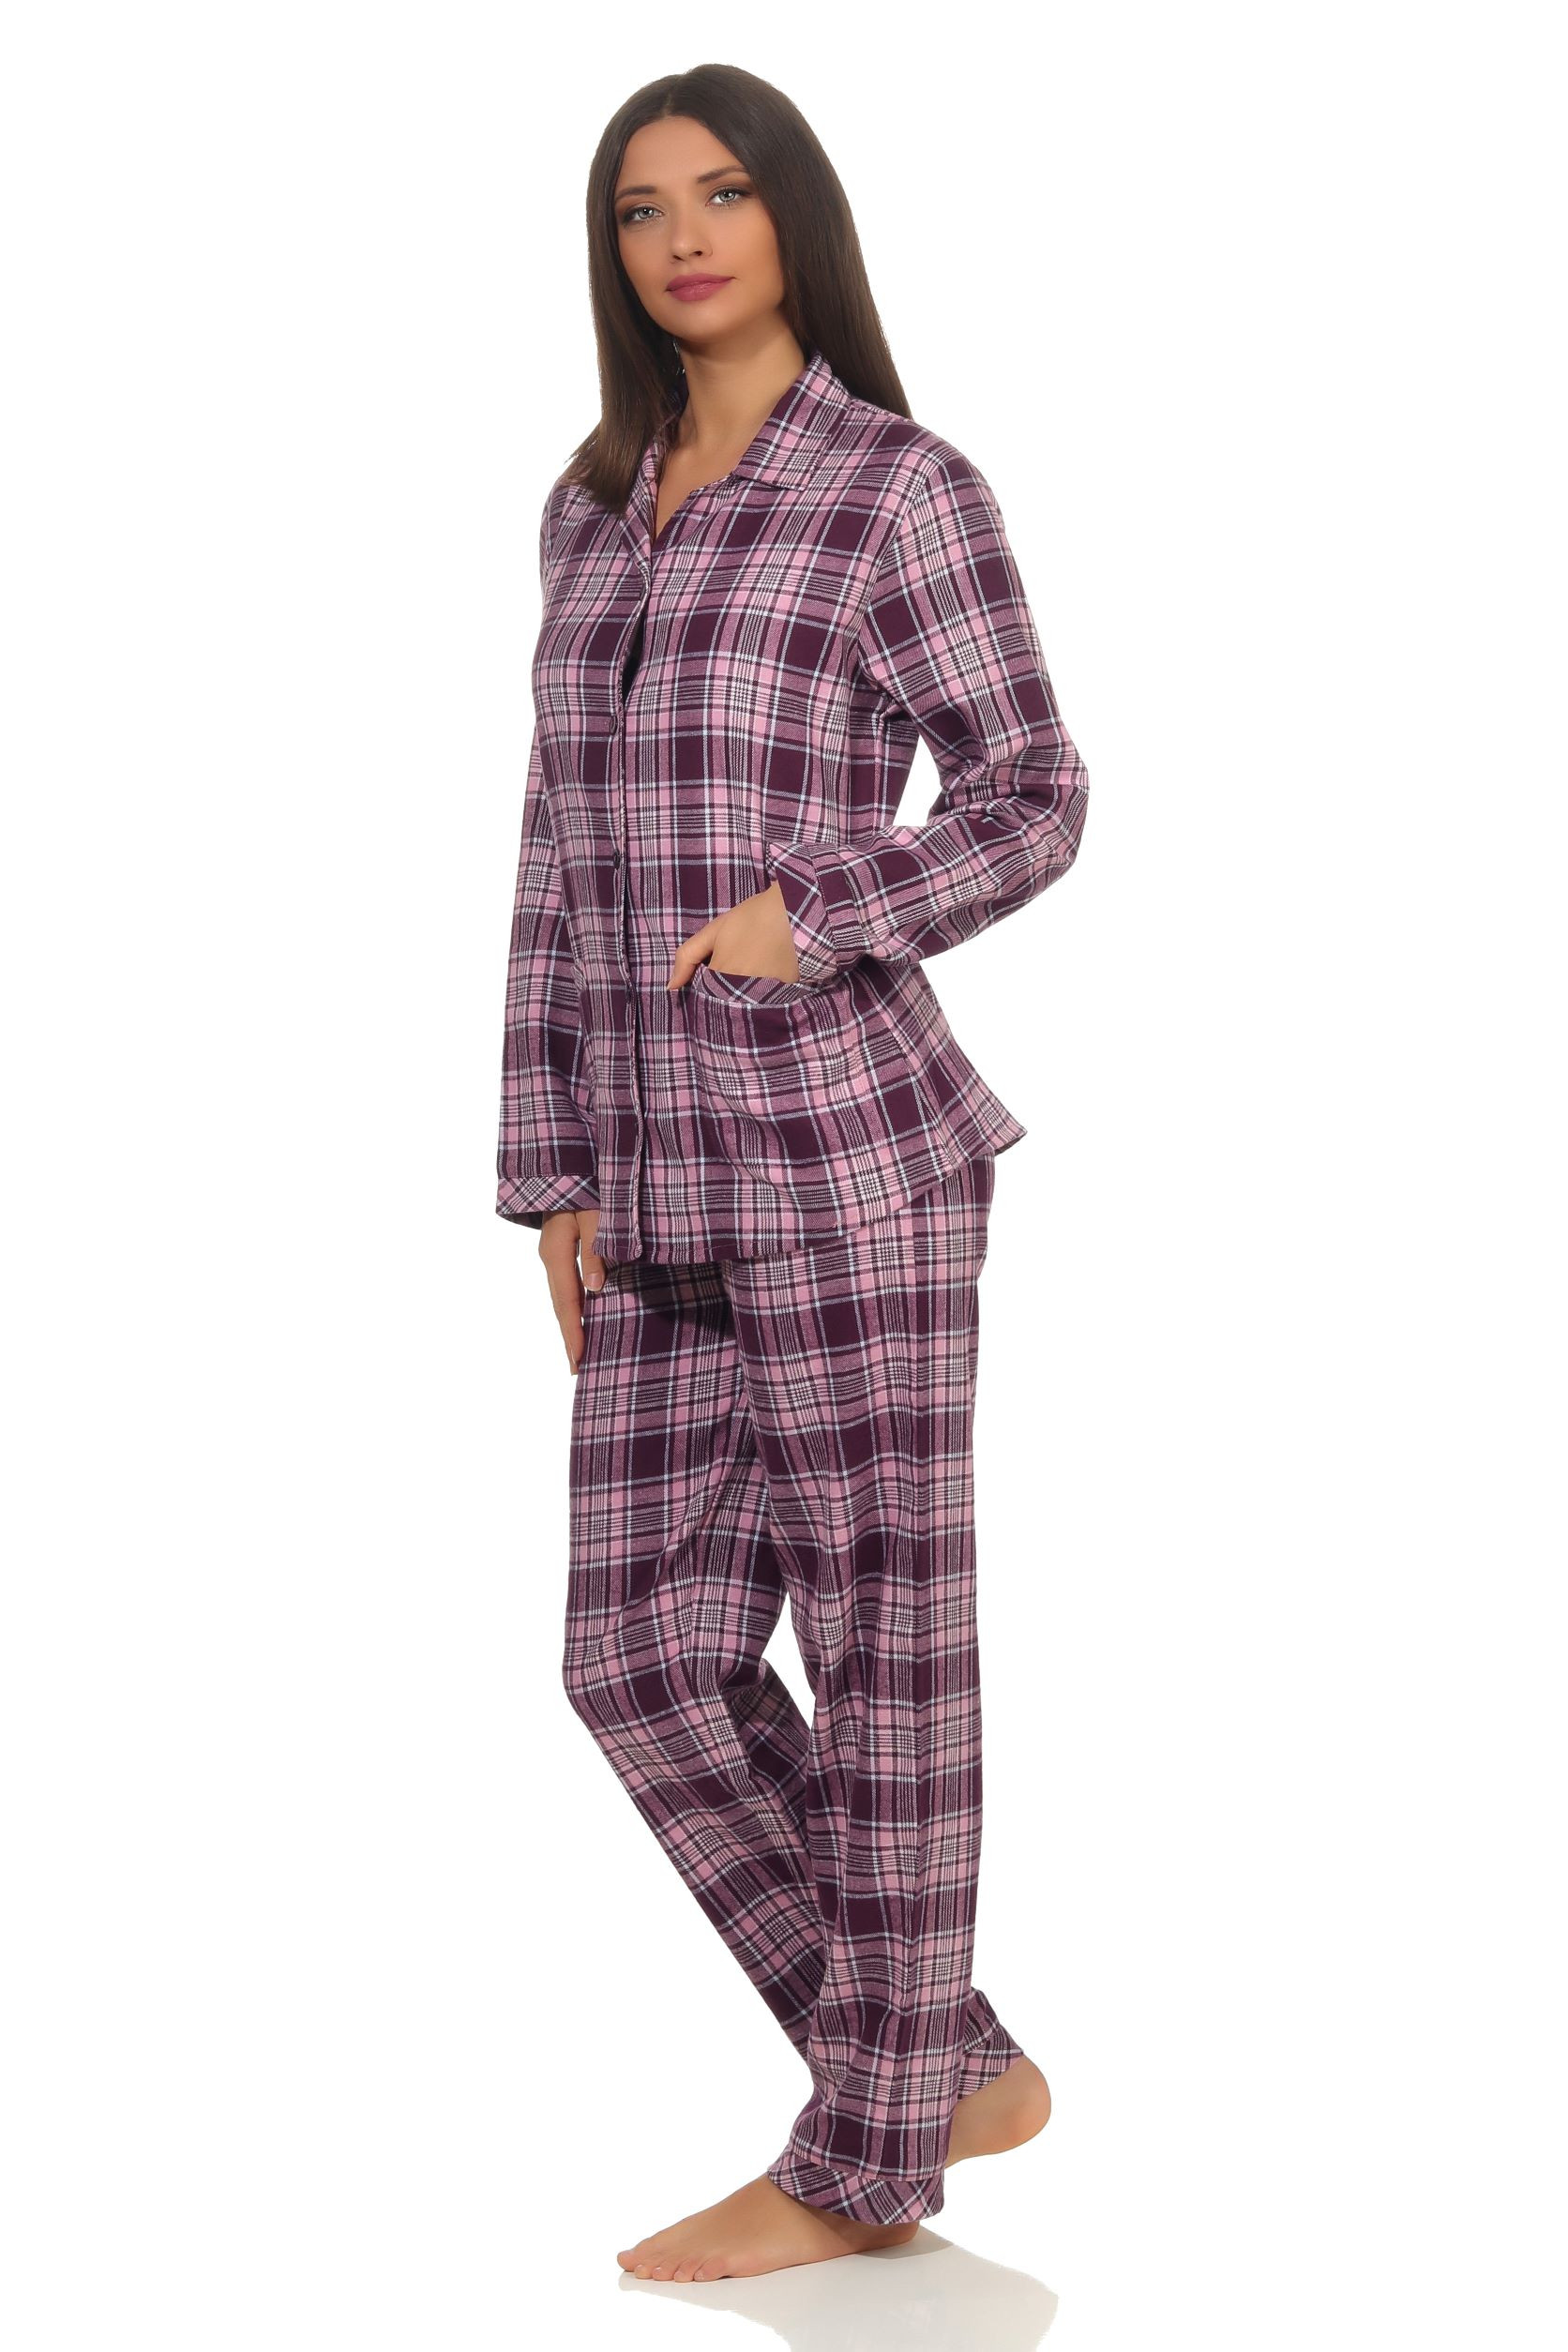 Dames pyjama Creative flanel 64299-L 44/46